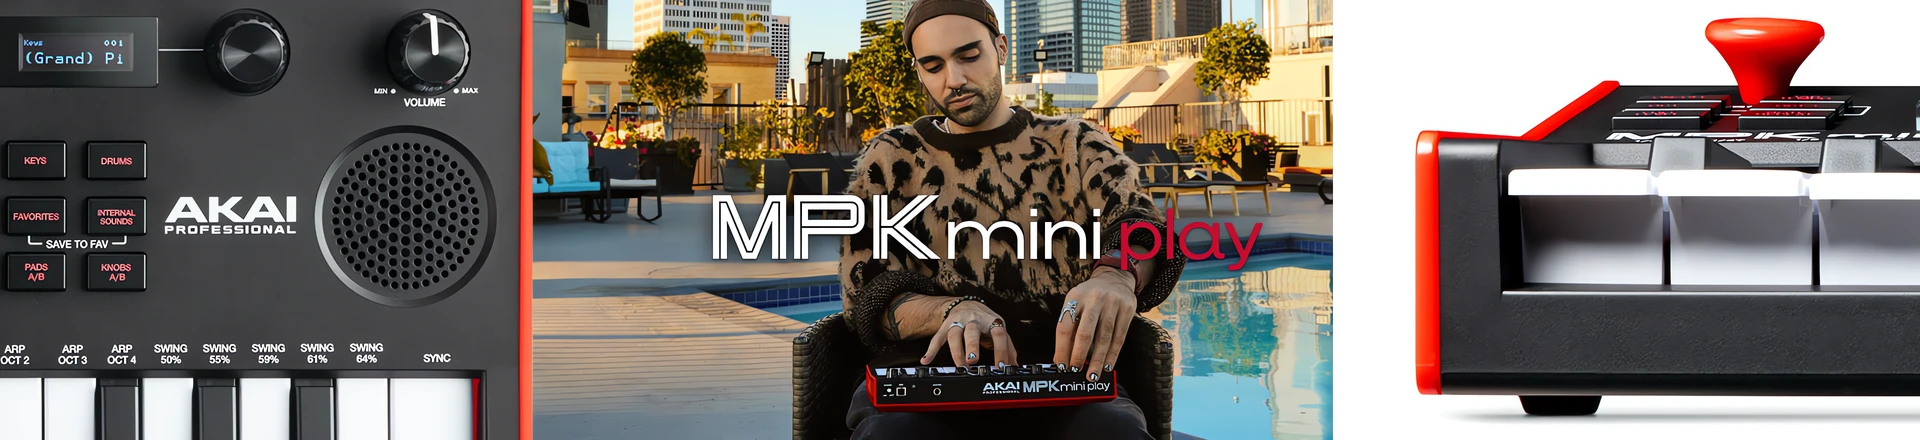 Klawiatura Akai MPK mini Play - komponuj muzykę w dowolnym miejscu